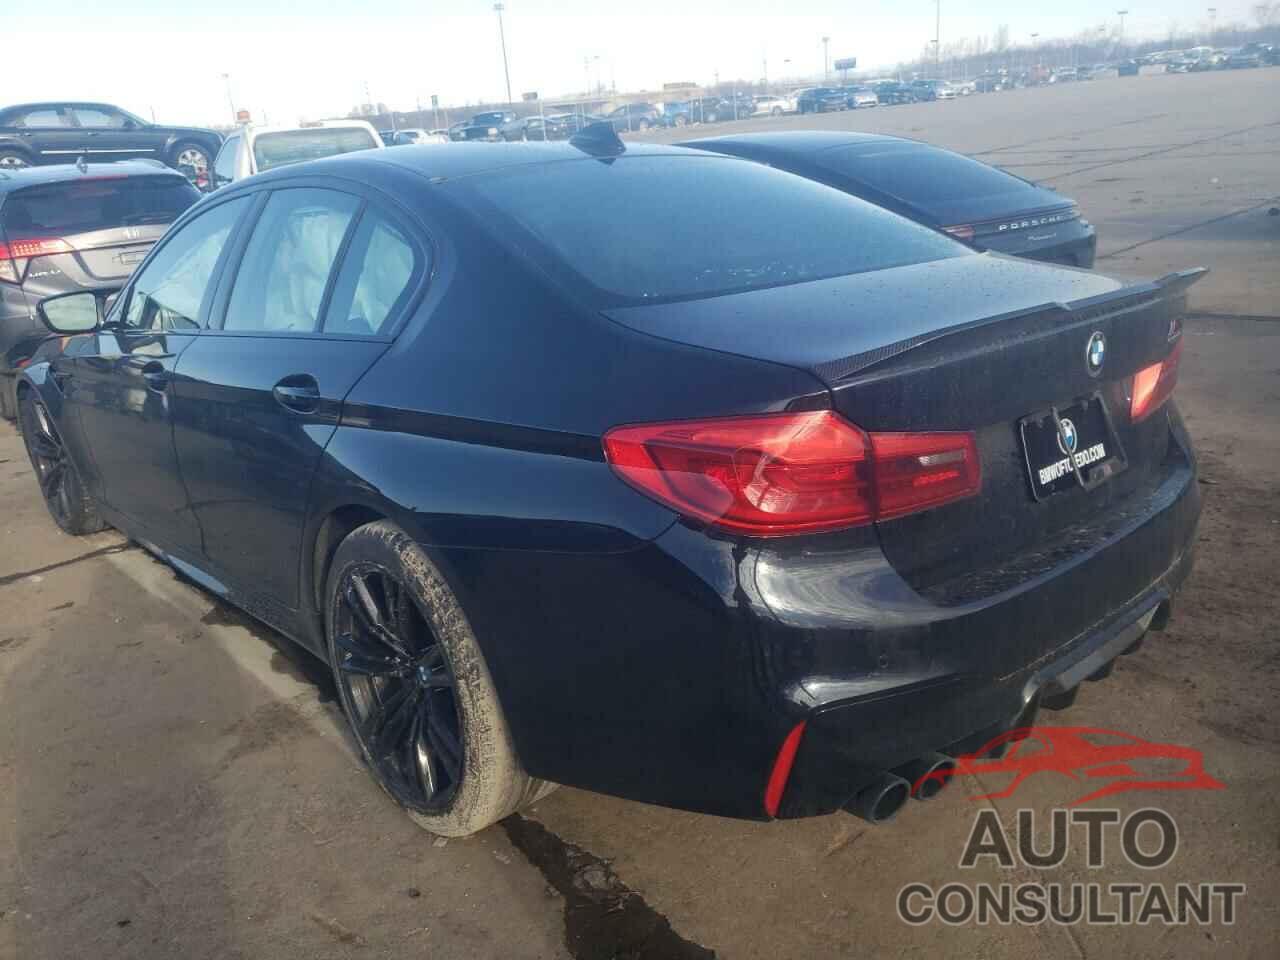 BMW M5 2019 - WBSJF0C53KB448081